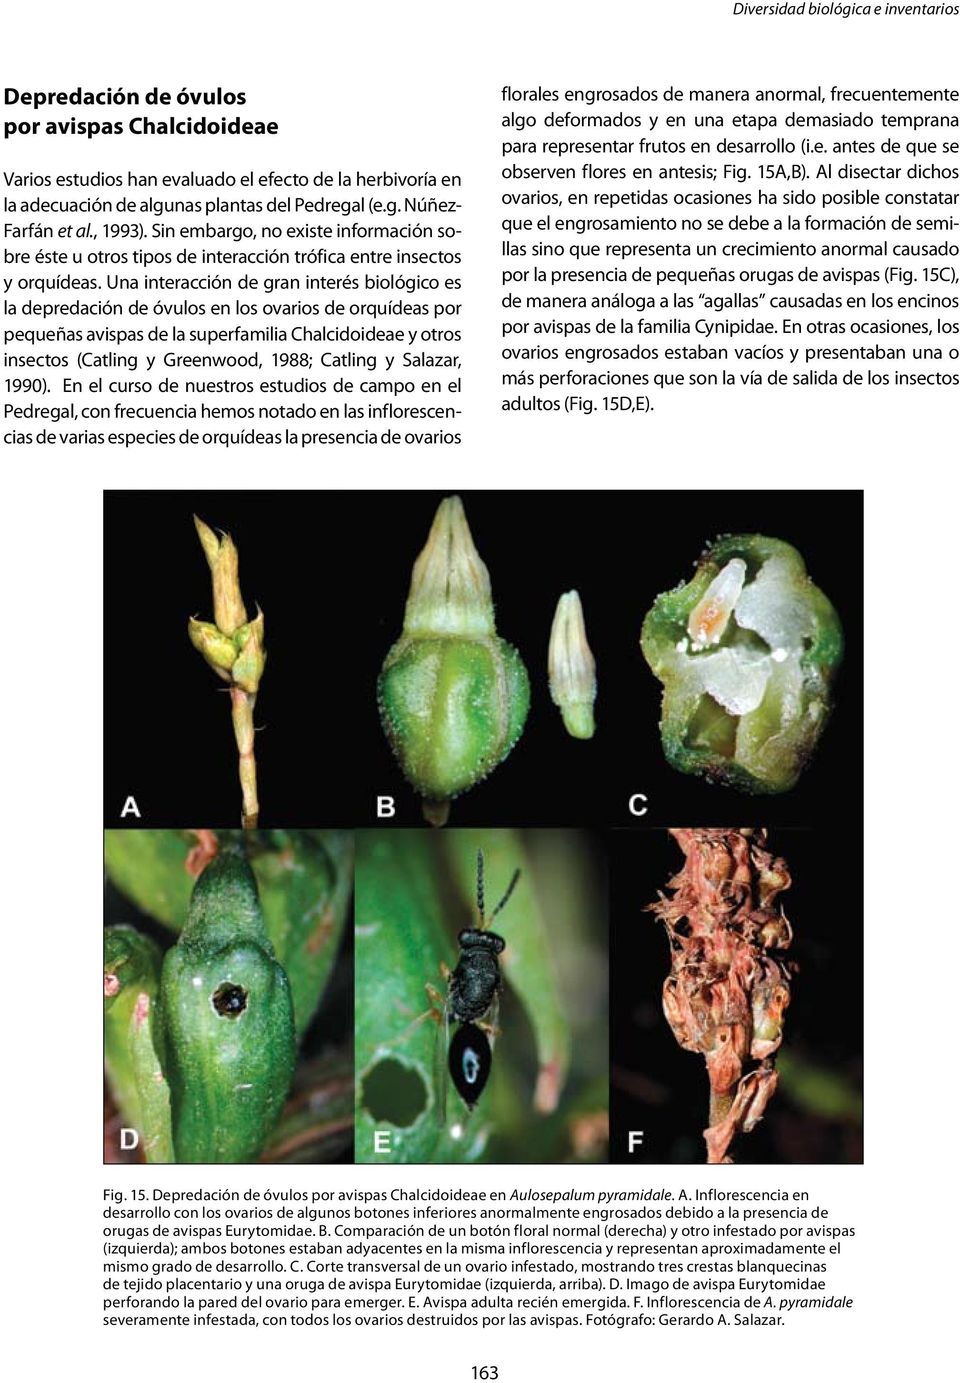 Una interacción de gran interés biológico es la depredación de óvulos en los ovarios de orquídeas por pequeñas avispas de la superfamilia Chalcidoideae y otros insectos (Catling y Greenwood, 1988;